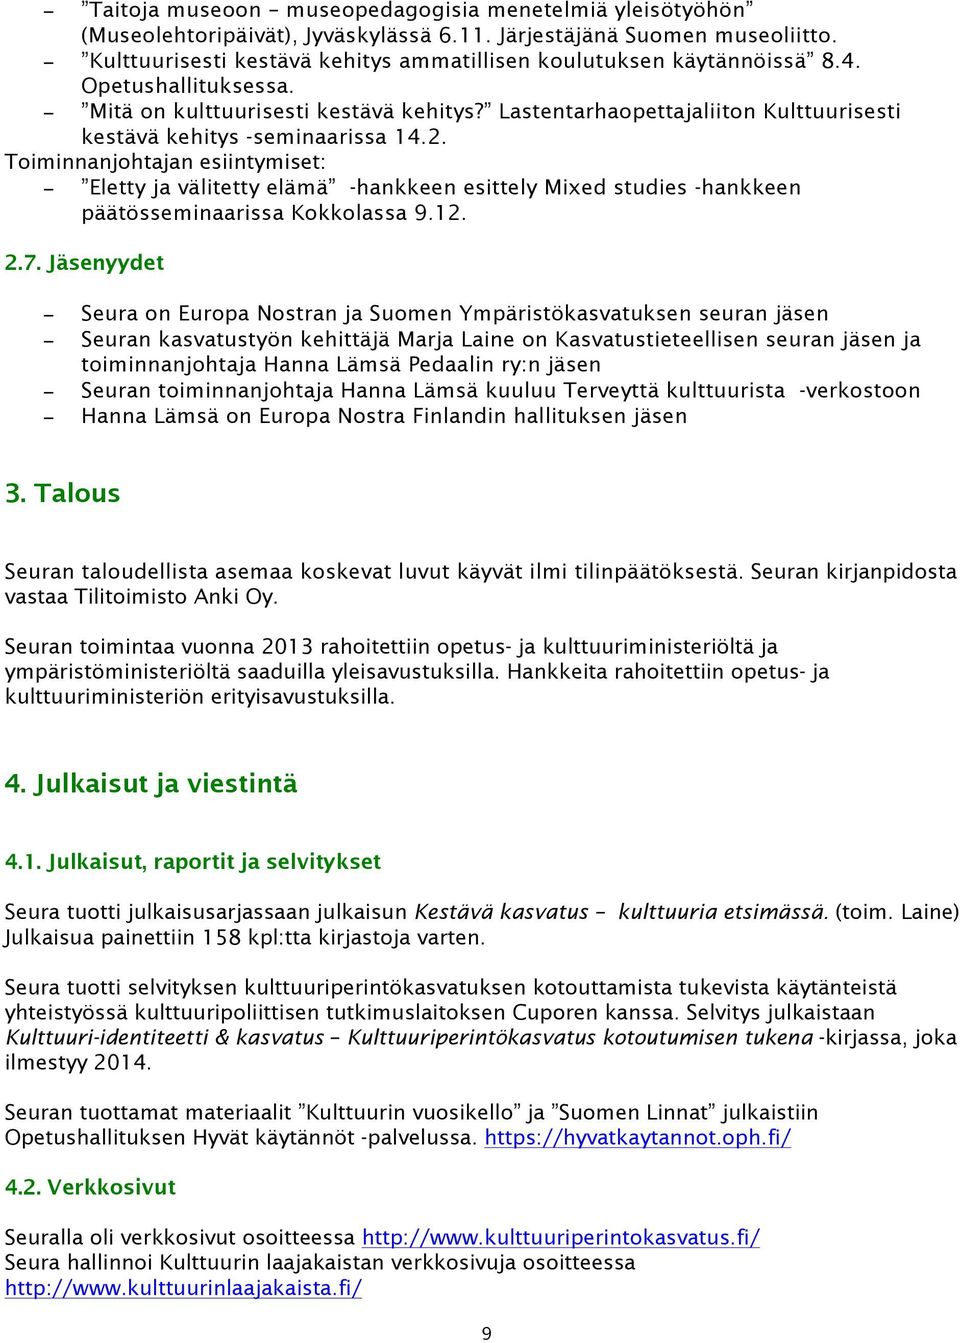 Lastentarhaopettajaliiton Kulttuurisesti kestävä kehitys -seminaarissa 14.2.